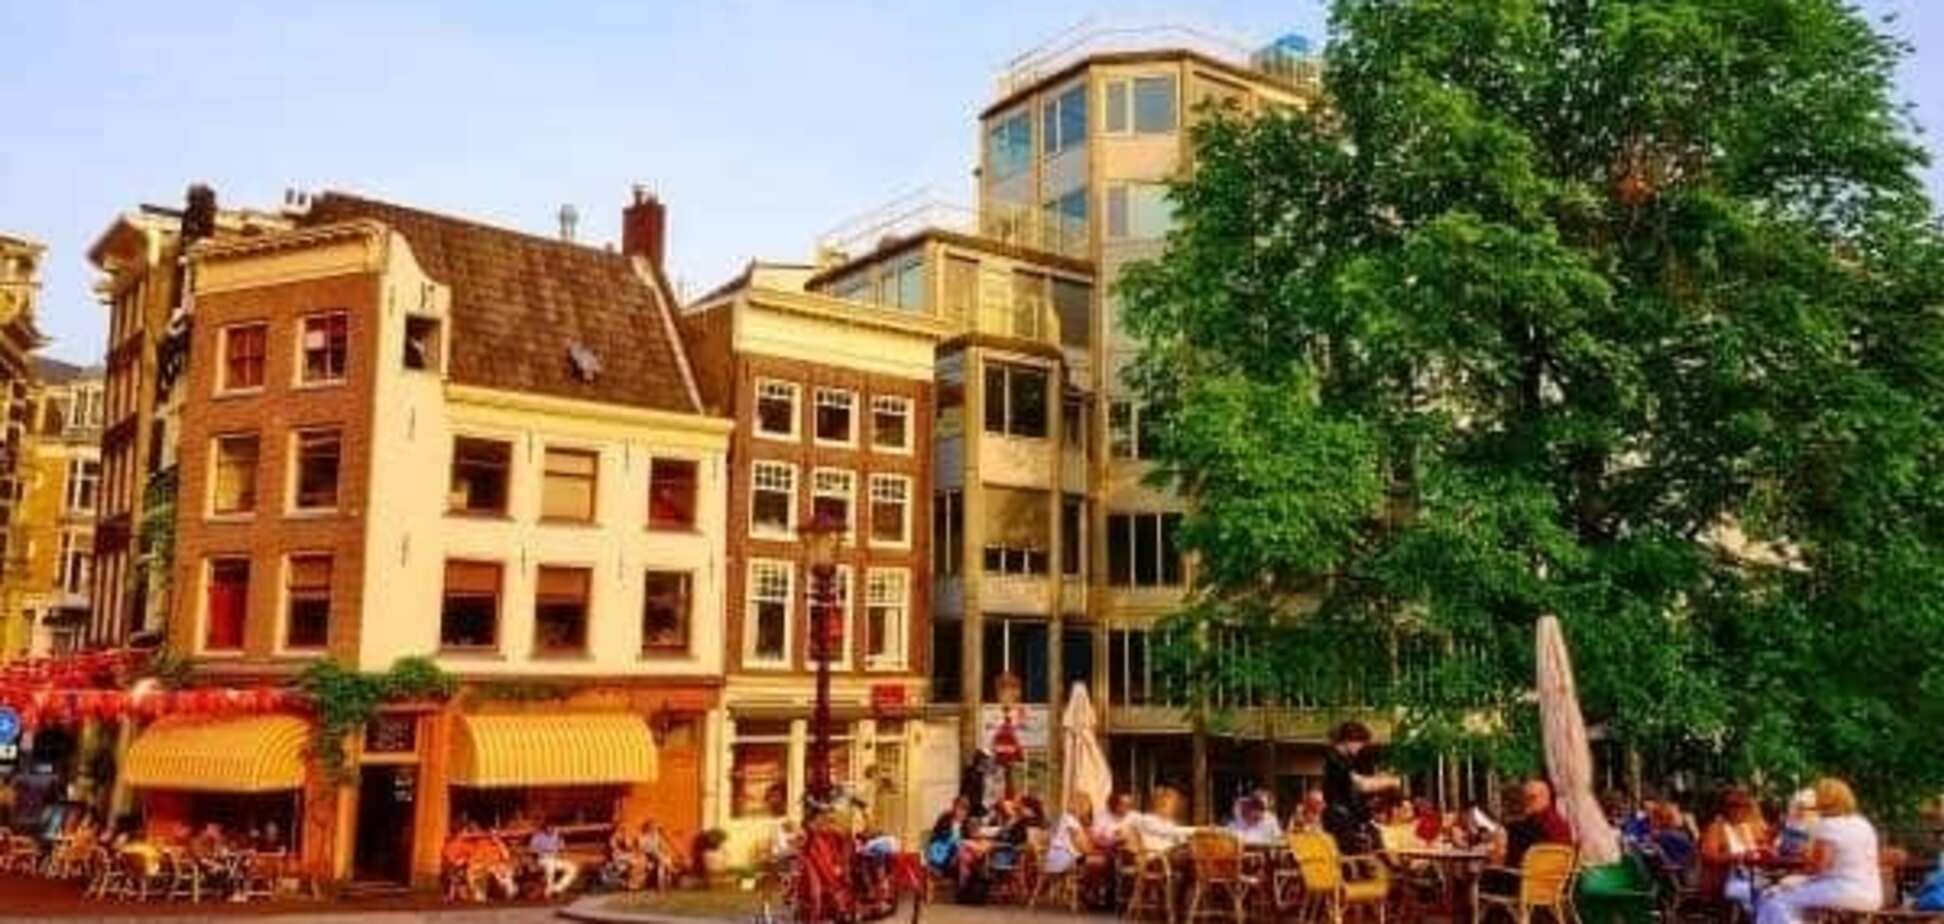 Живописные каналы, необычные музеи, лучшие клубы: интересные места в Амстердаме